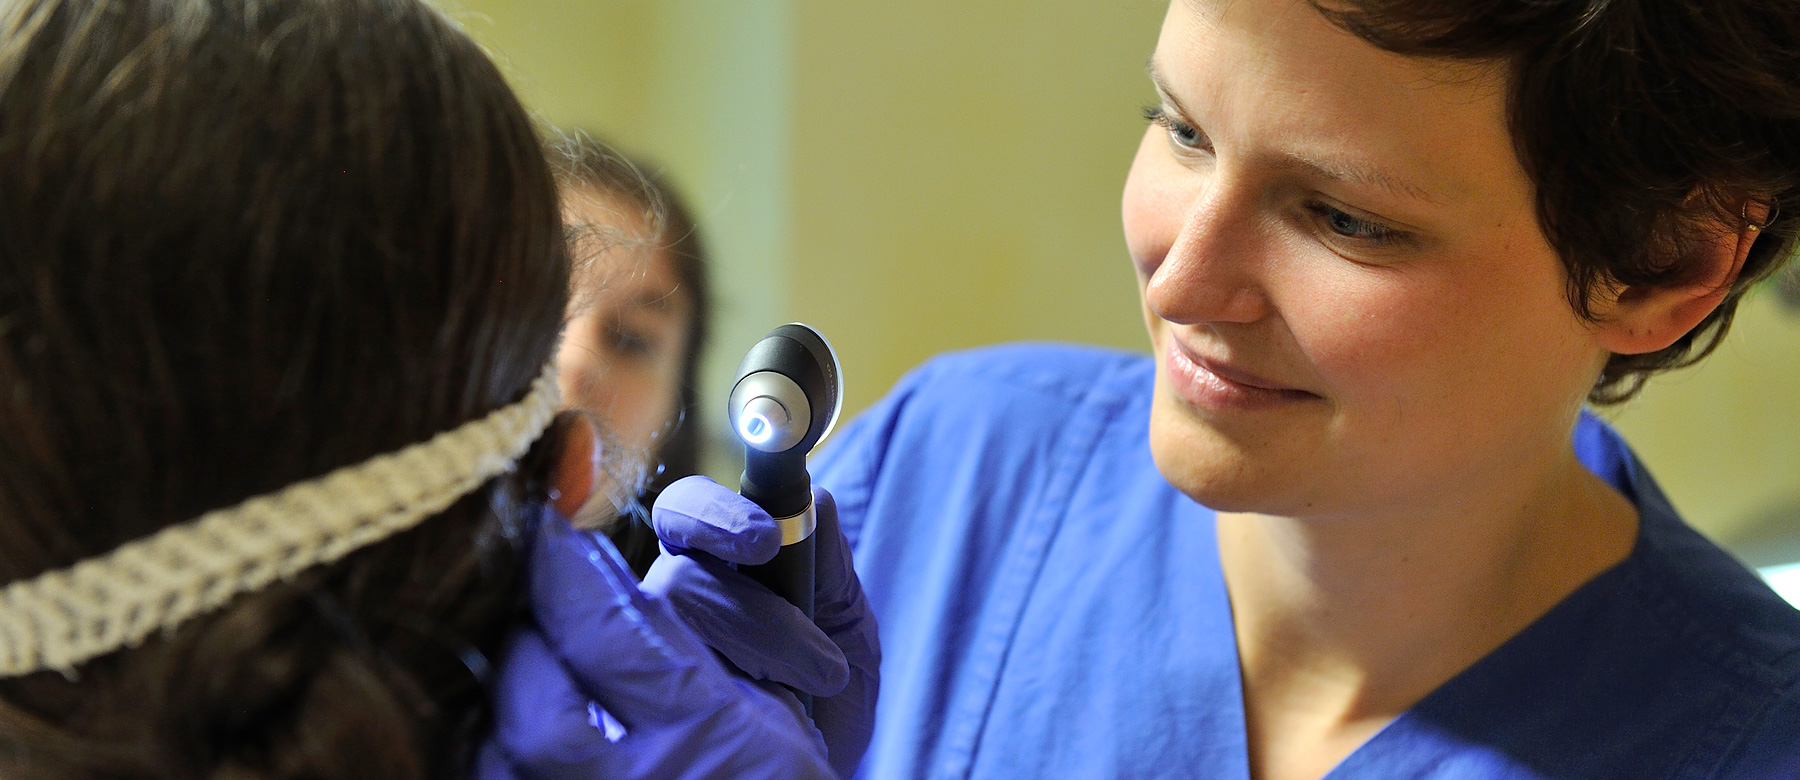 Ärztin untersucht mit einem Otoskop das Ohr einer Patientin.